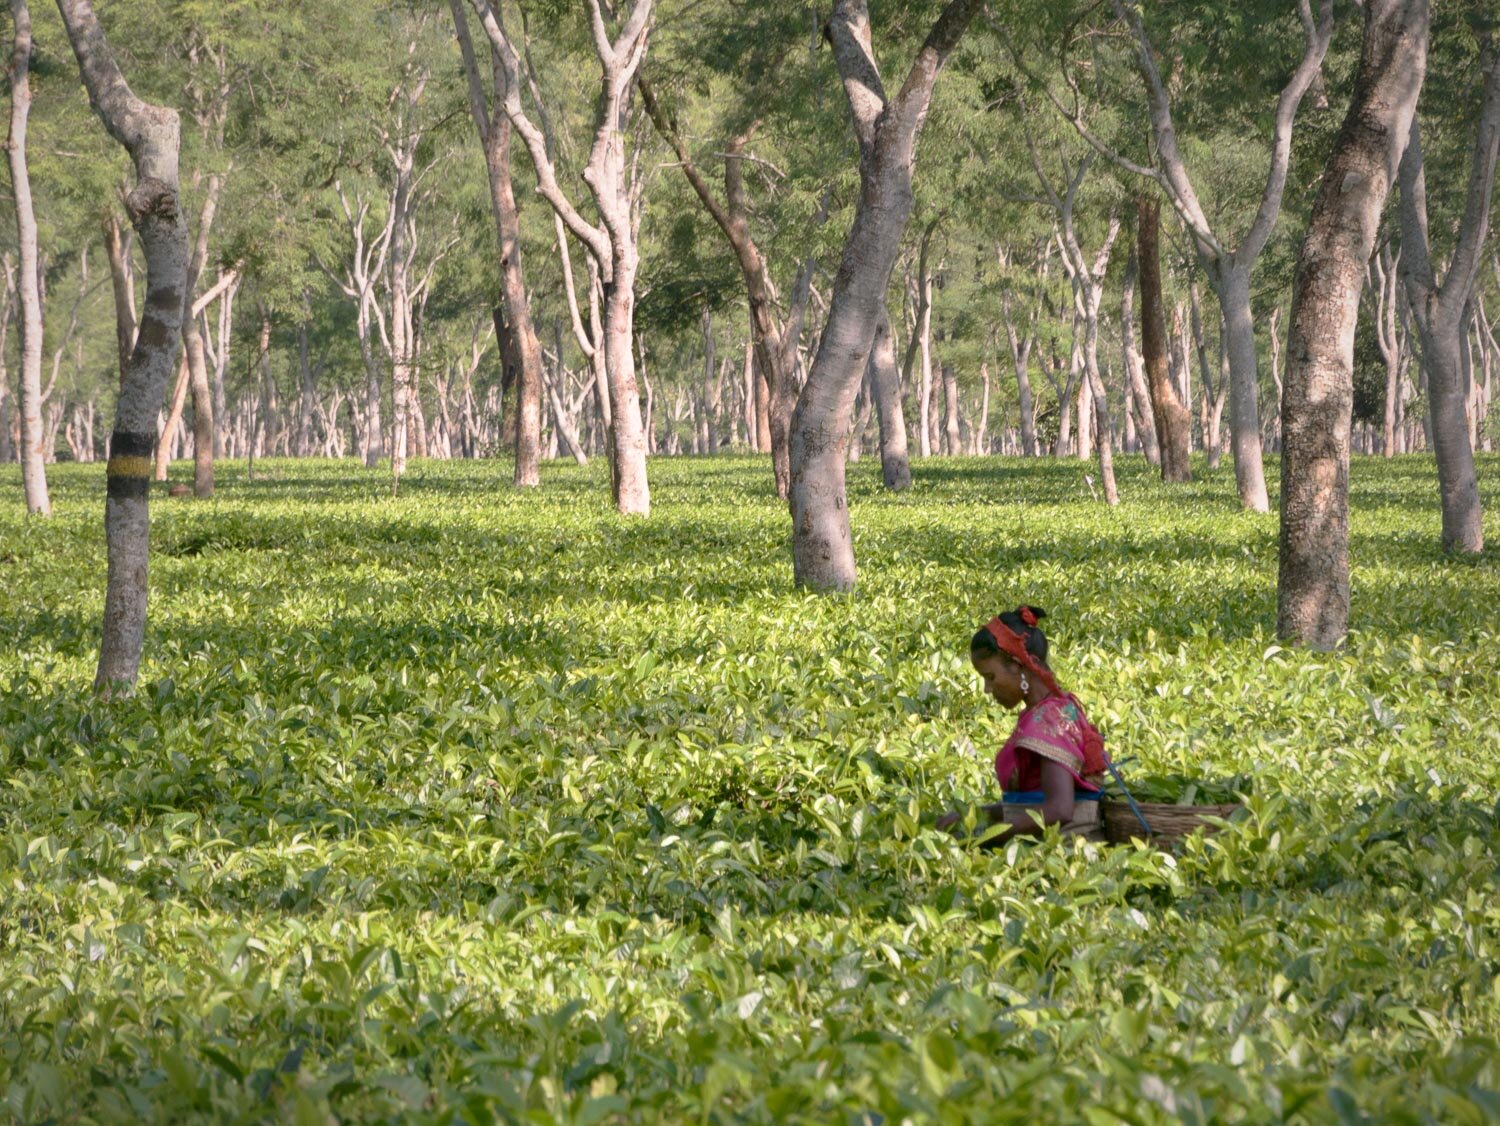 Picking tea at the Donyi Polo Tea Estate, Arunachel Pradesh, India